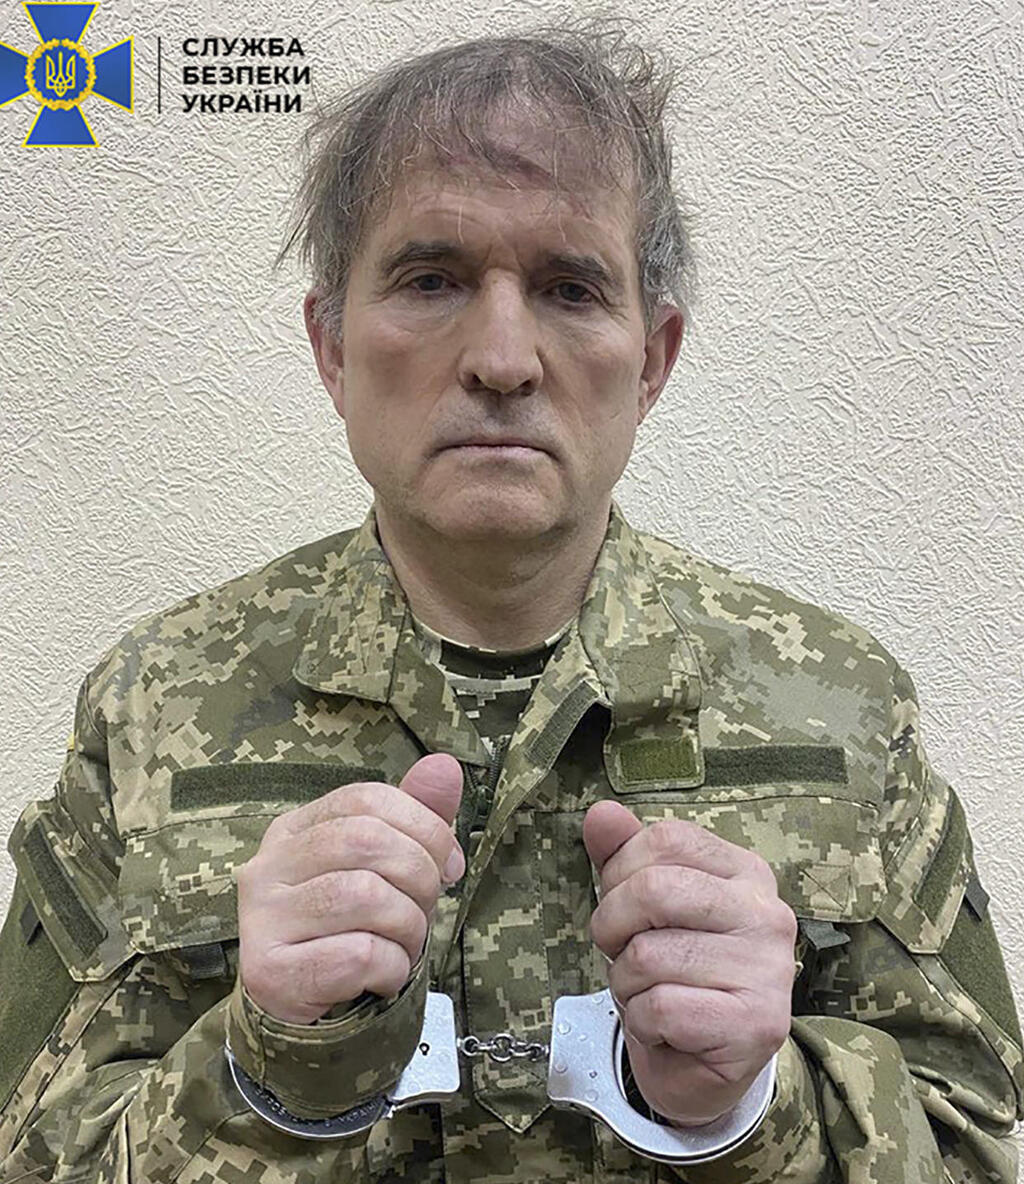 אוקראינה ויקטור מדבדצ'וק פוליטיקאי פרו רוסי עשיר בעל ברית של ולדימיר פוטין נעצר ב מבצע חשאי